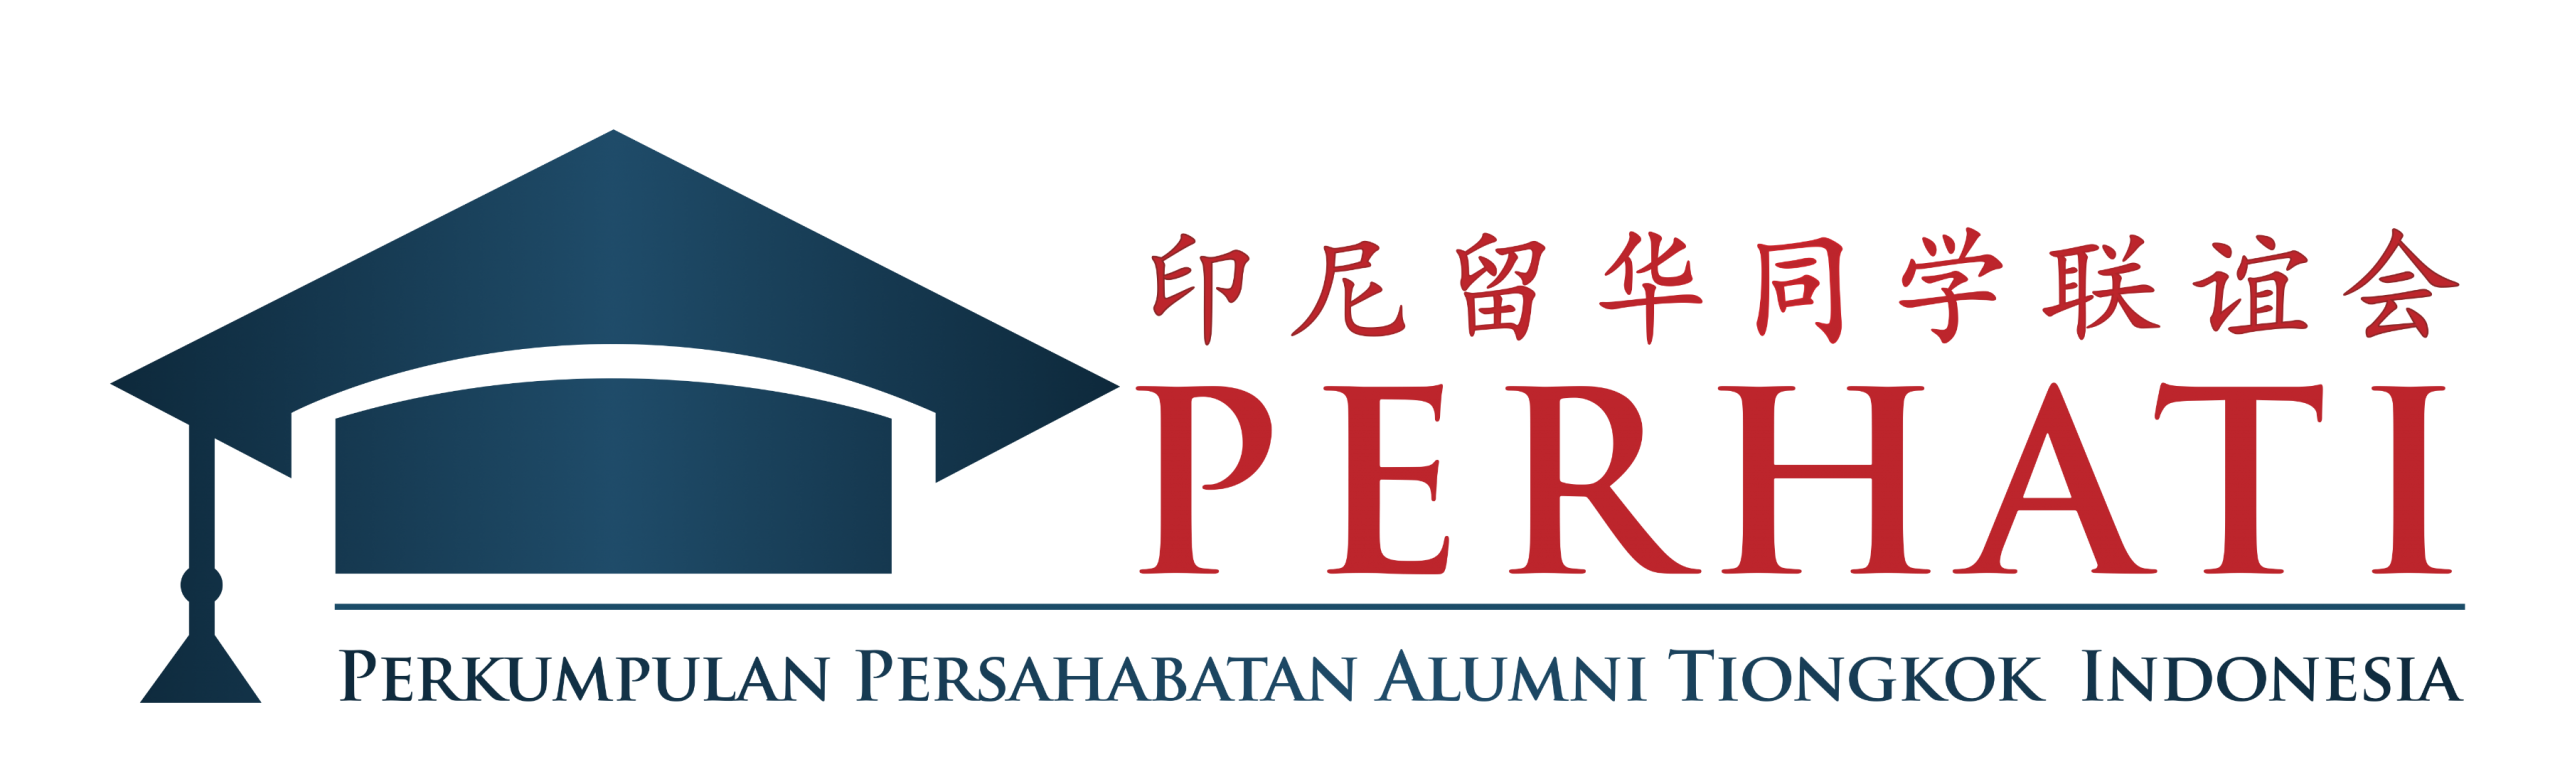 Perkumpulan Persahabatan Alumni Tiongkok Indonesia |  印尼留华同学联谊会